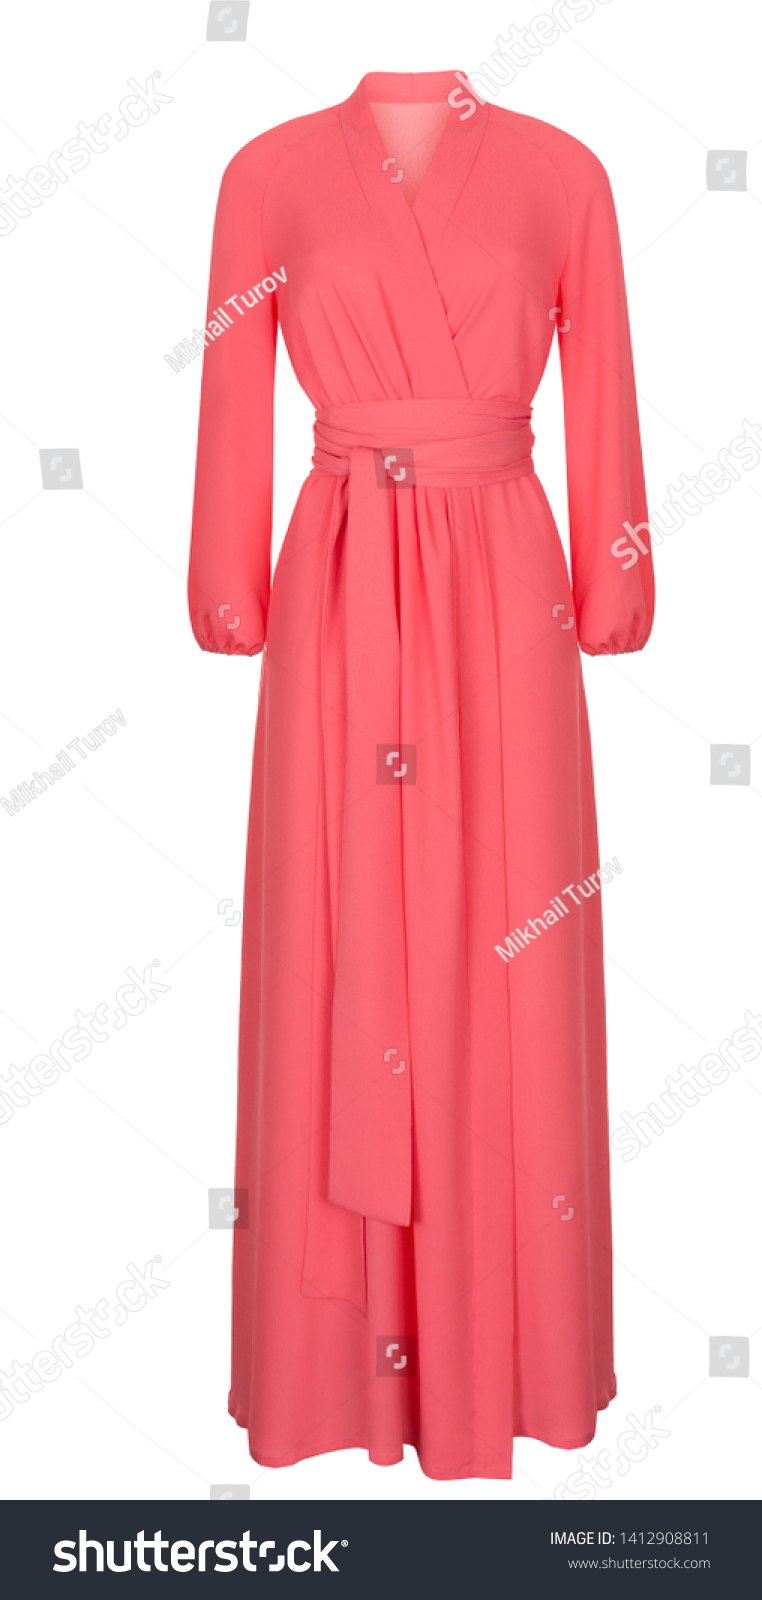 Beautiful Light Pink Summer Dress Long ...